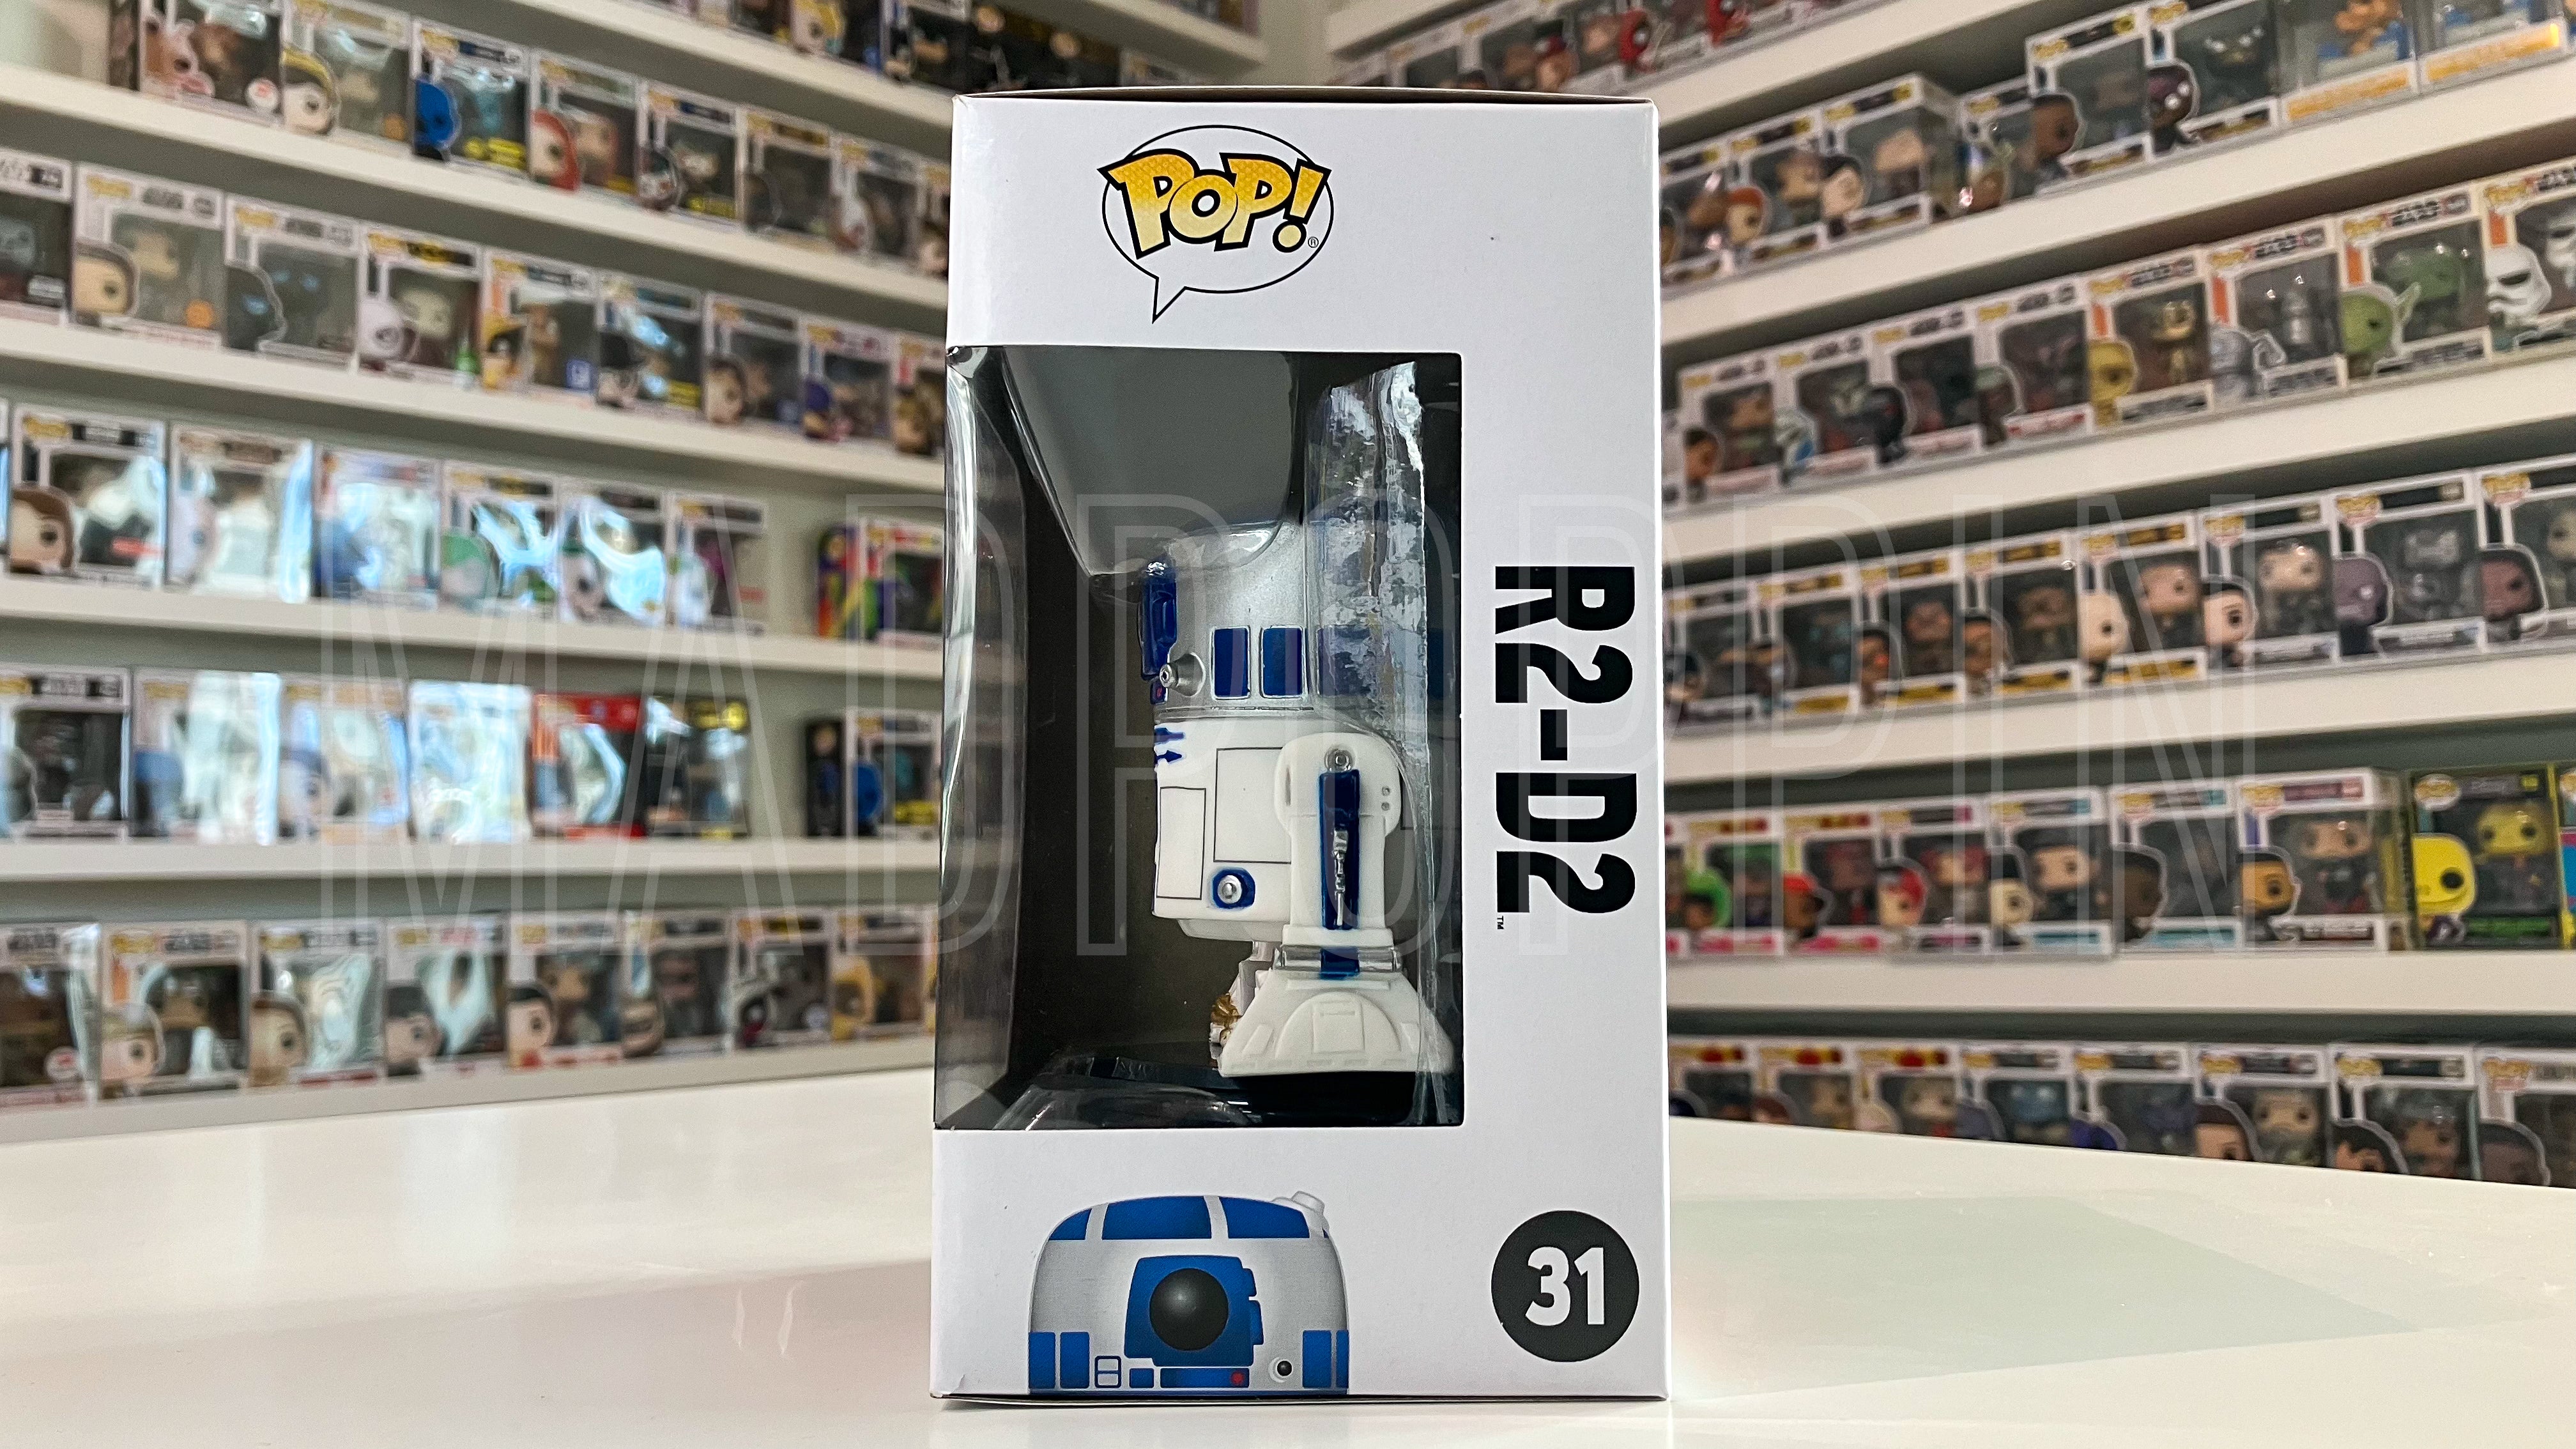 POP! Star Wars: Star Wars - R2-D2 (Black Box)